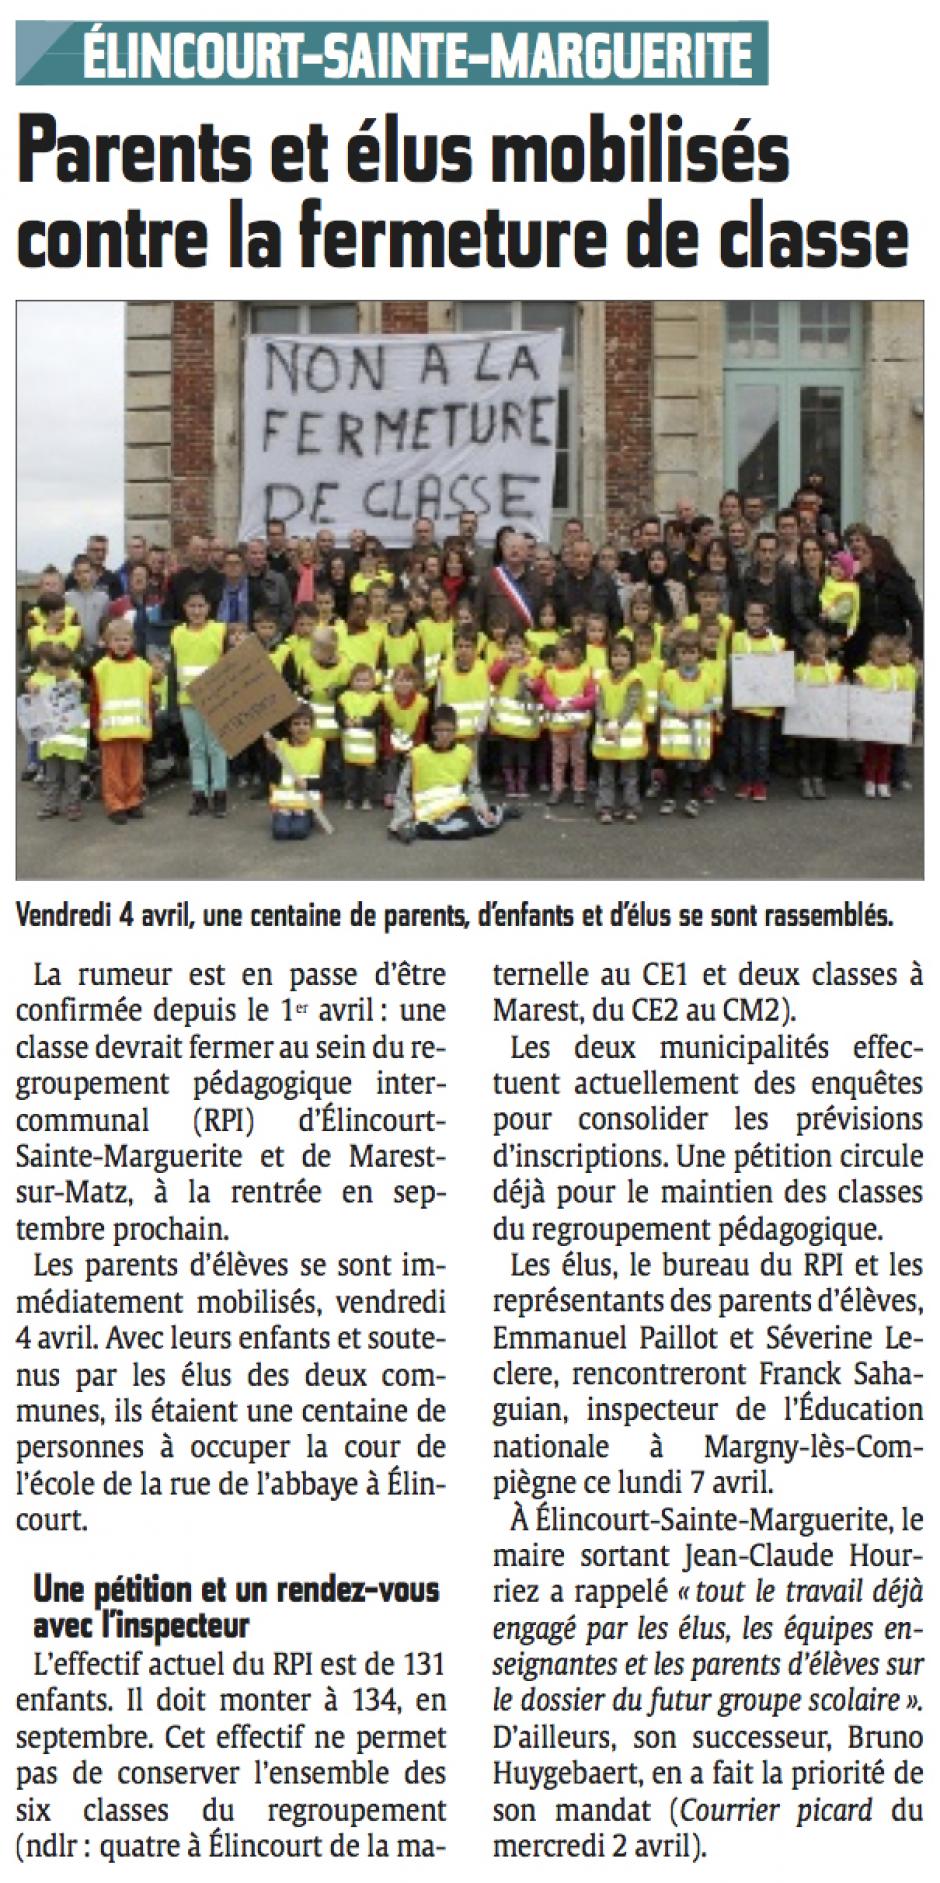 20140407-LeP-Élincourt-Sainte-Marguerite-Parents et élus mobilisés contre la fermeture de classe